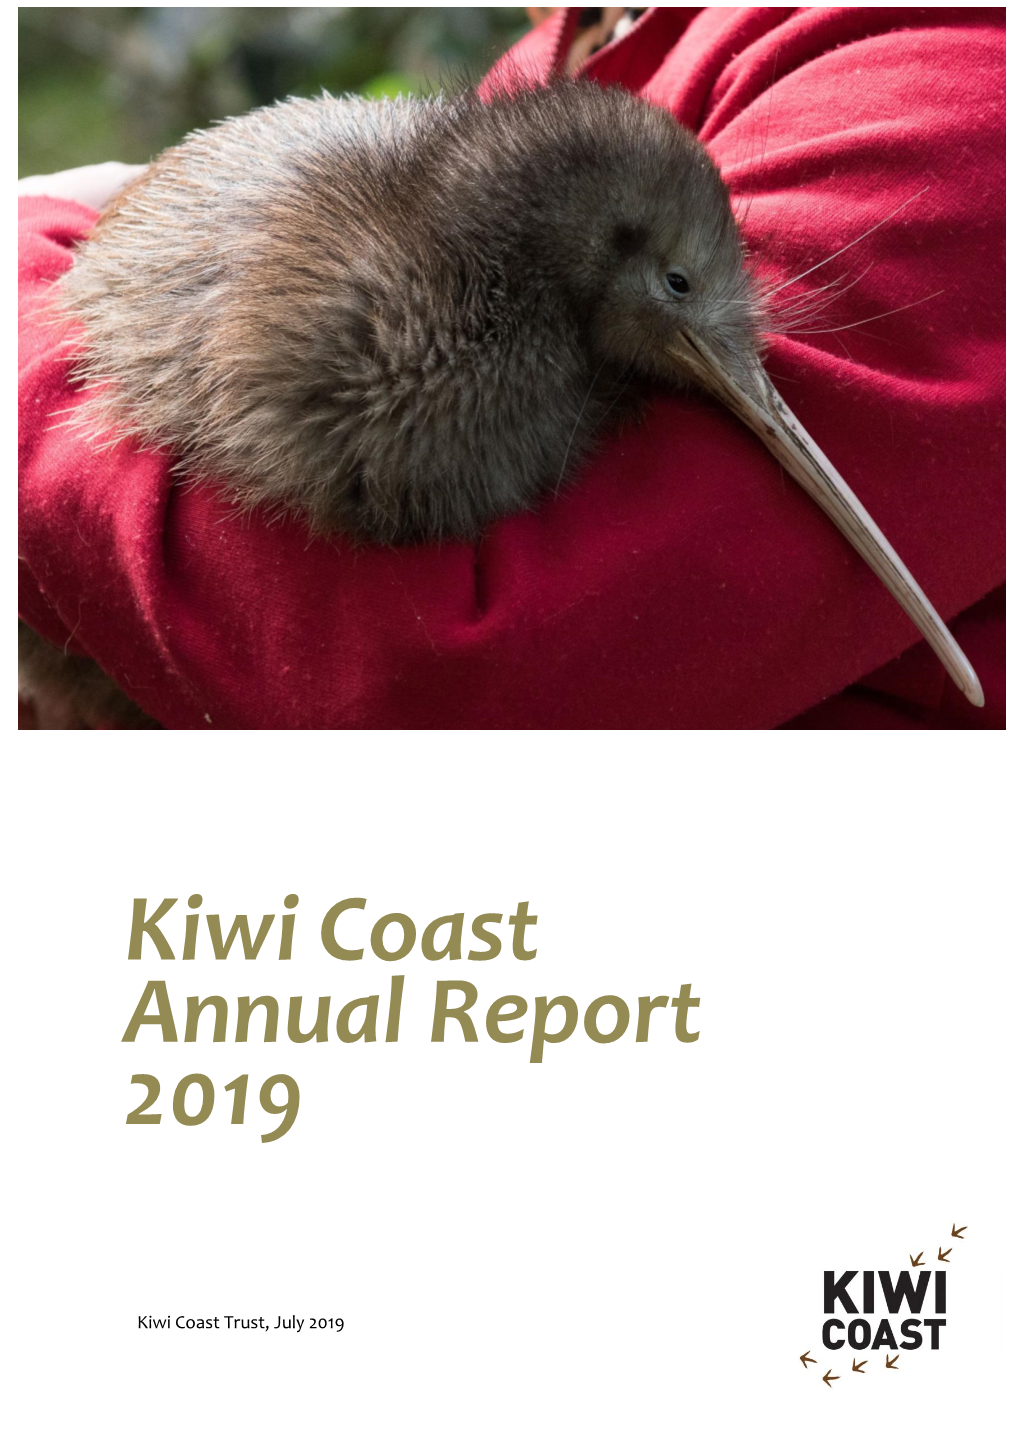 Kiwi Coast Annual Report 2019